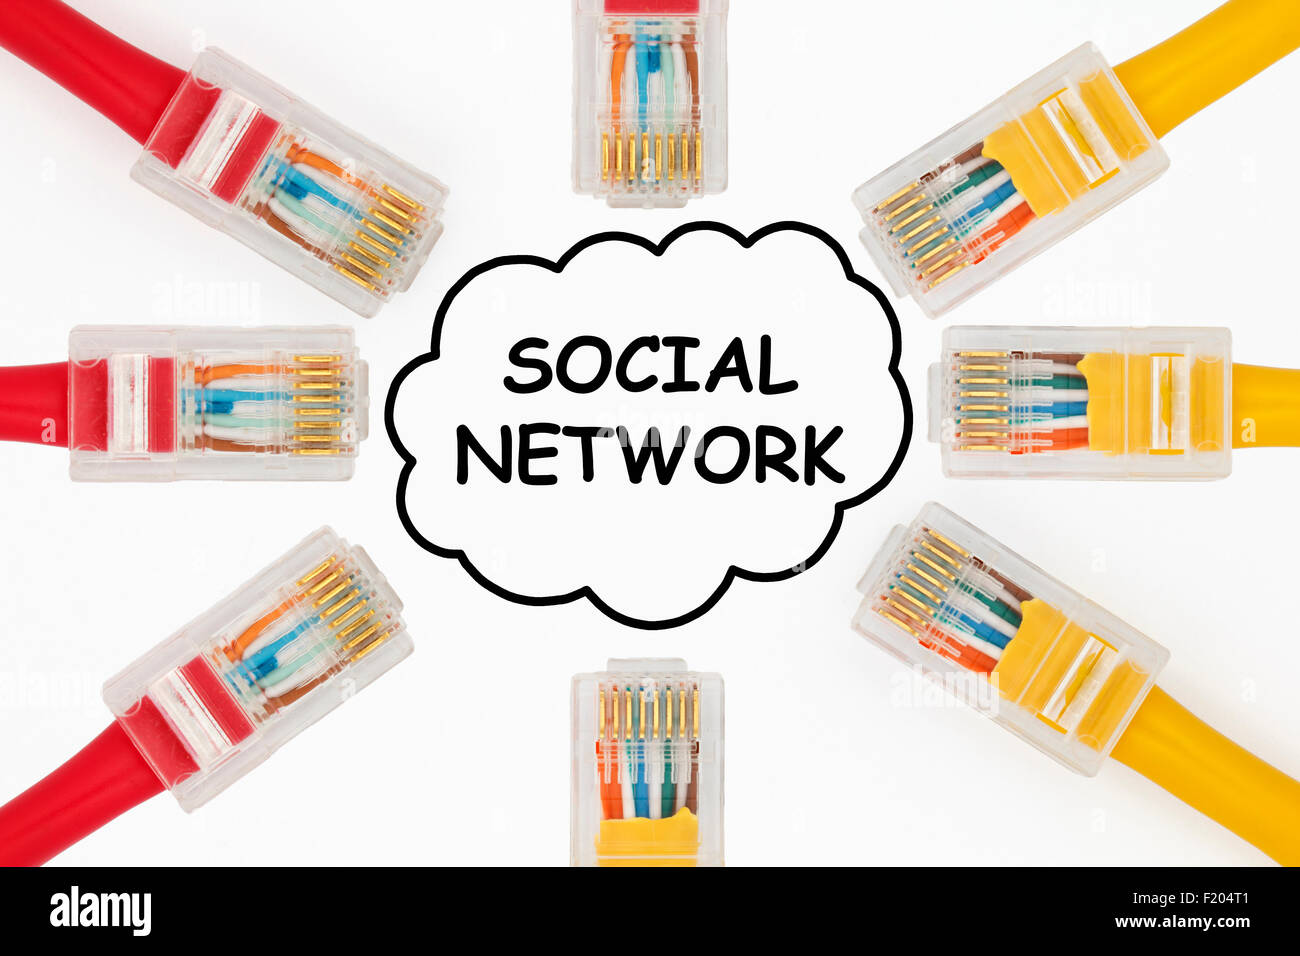 Rete sociale concetto. Cavi LAN per la connessione in una rete sociale rappresentata come una nuvola su uno sfondo bianco. Foto Stock